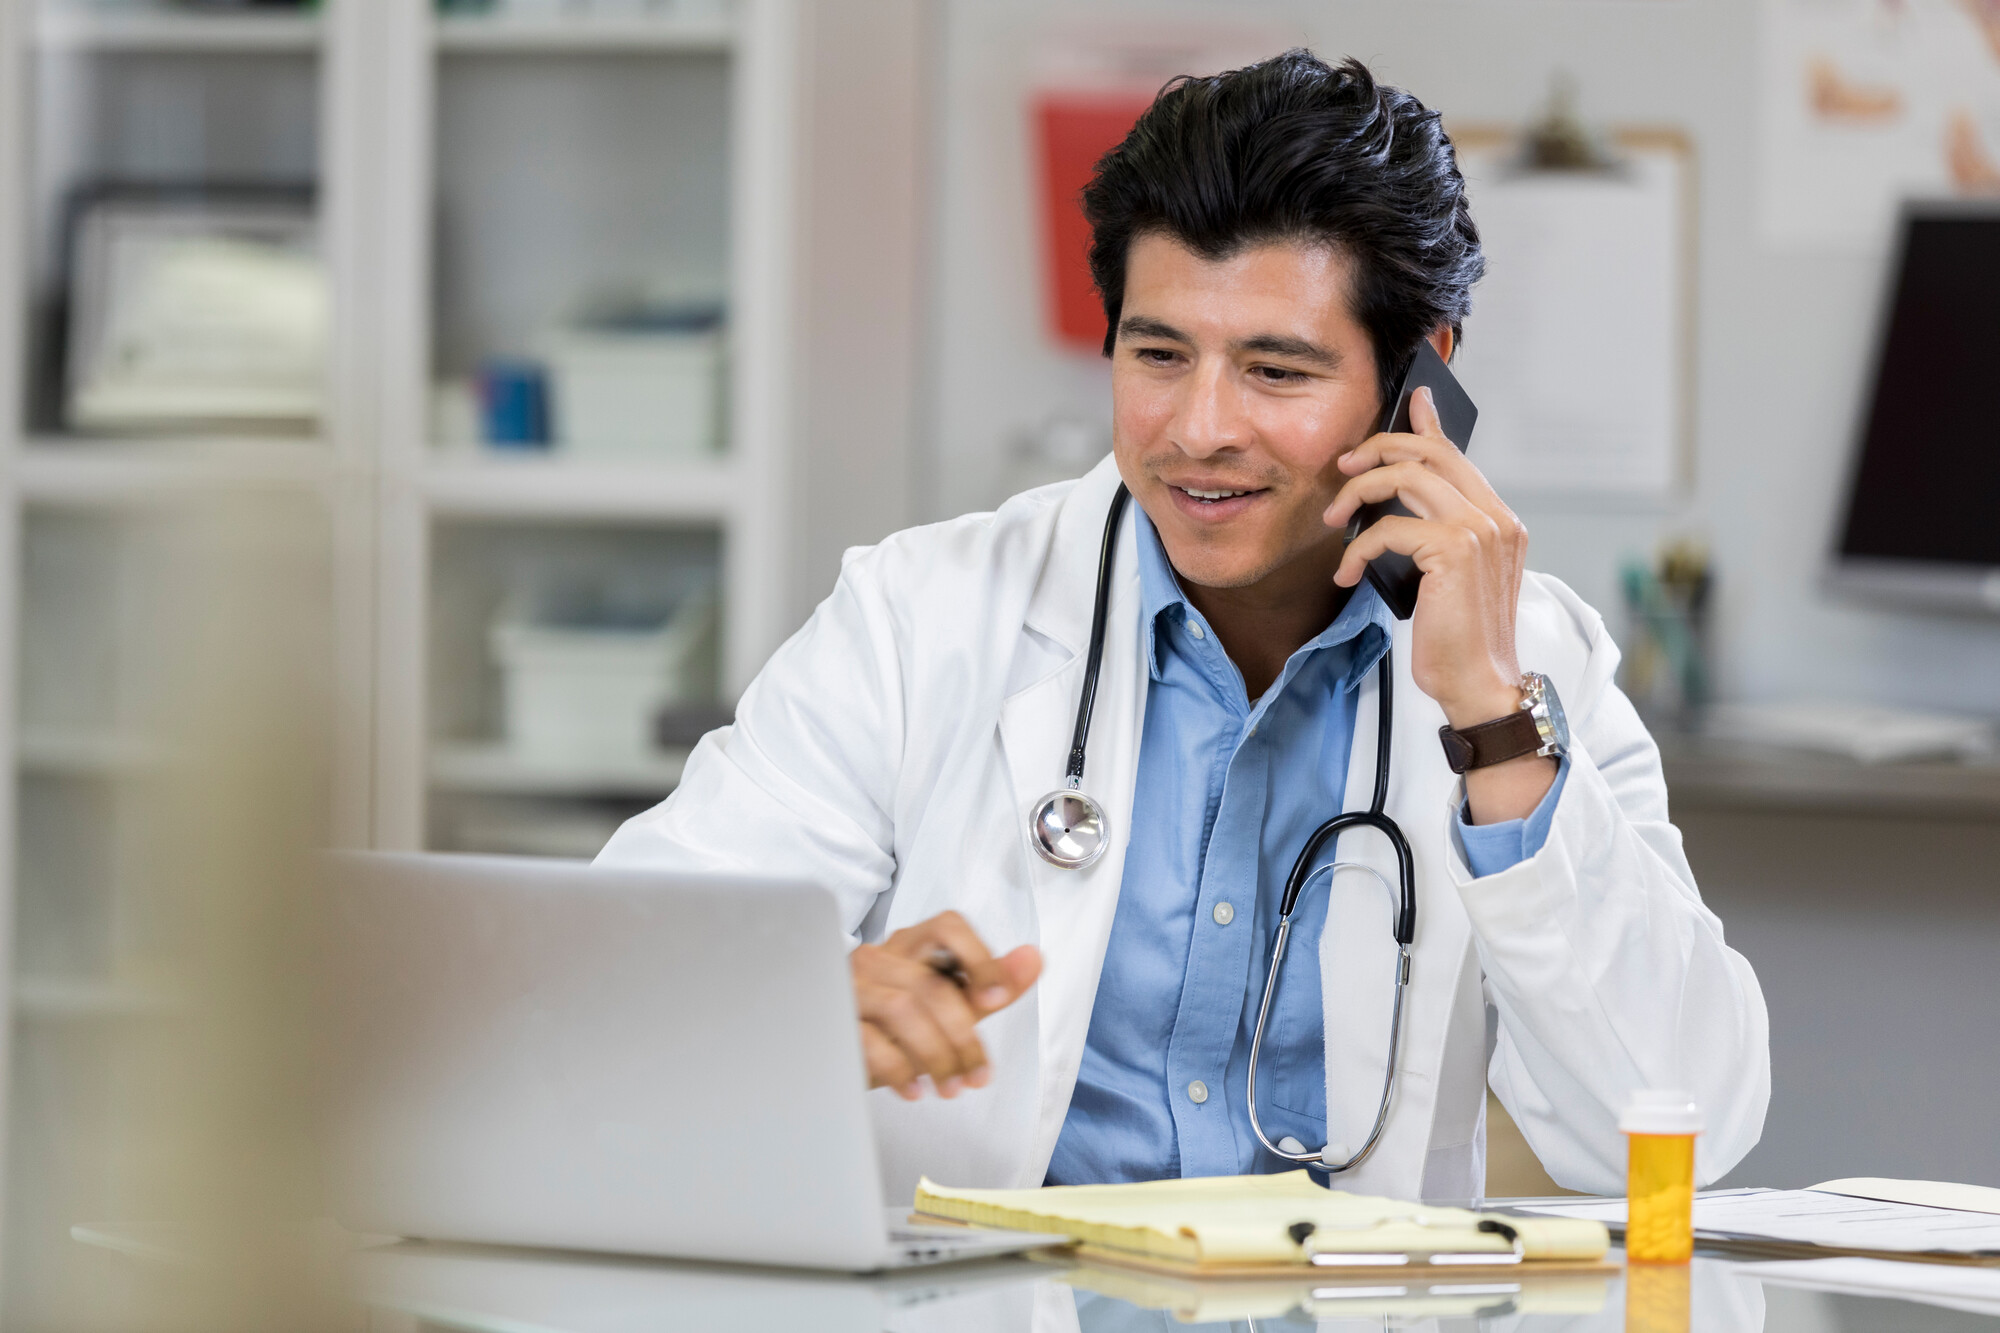 Vorerst bis zum 30. November dürfen Ärzte wieder die telefonische Krankschreibung nutzen. Dabei gelten mehrere Vorgaben.